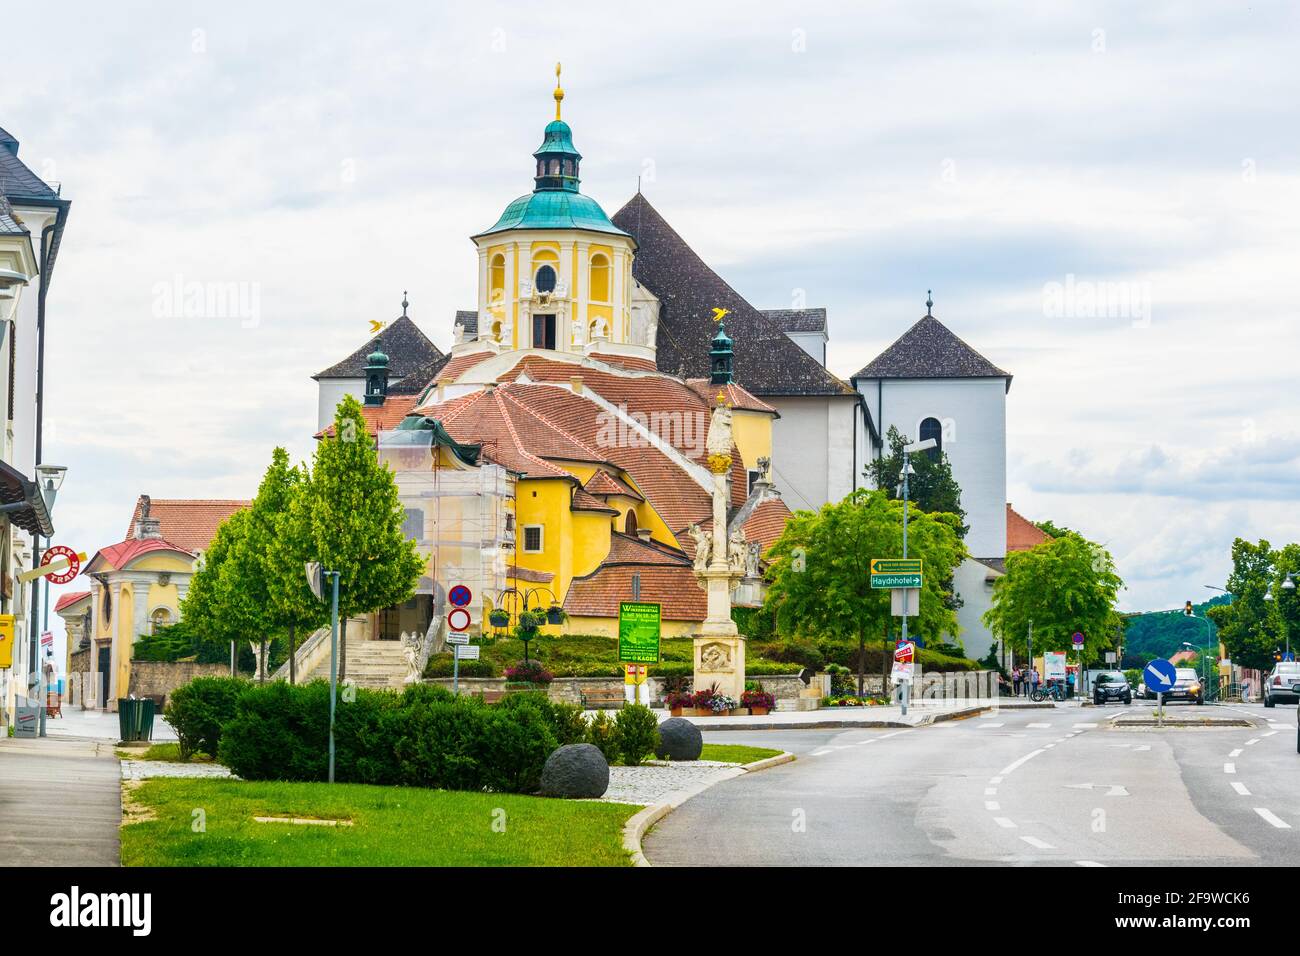 EISENSTADT, AUTRICHE, 18 JUIN 2016 : vue sur la célèbre église de montagne (église Haydn de Kalvarienberg) à Eisenstadt, Autriche Banque D'Images